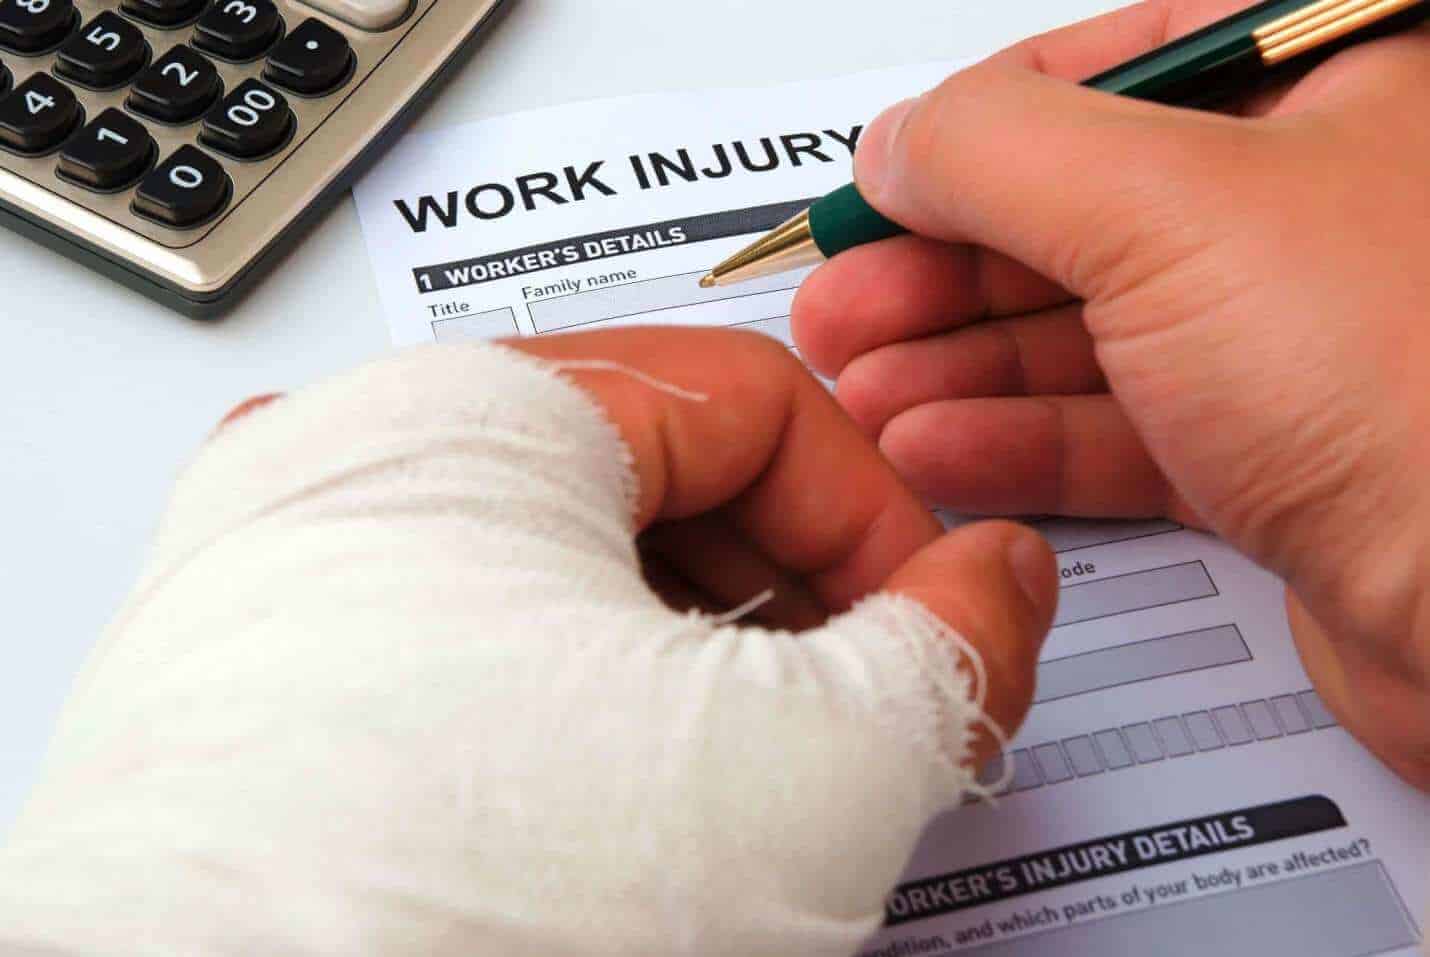 מדריך לנפגע תאונת עבודה- חלק ב'- טיפים ודגשים להגשת התביעה וניהולה מול ביטוח לאומי